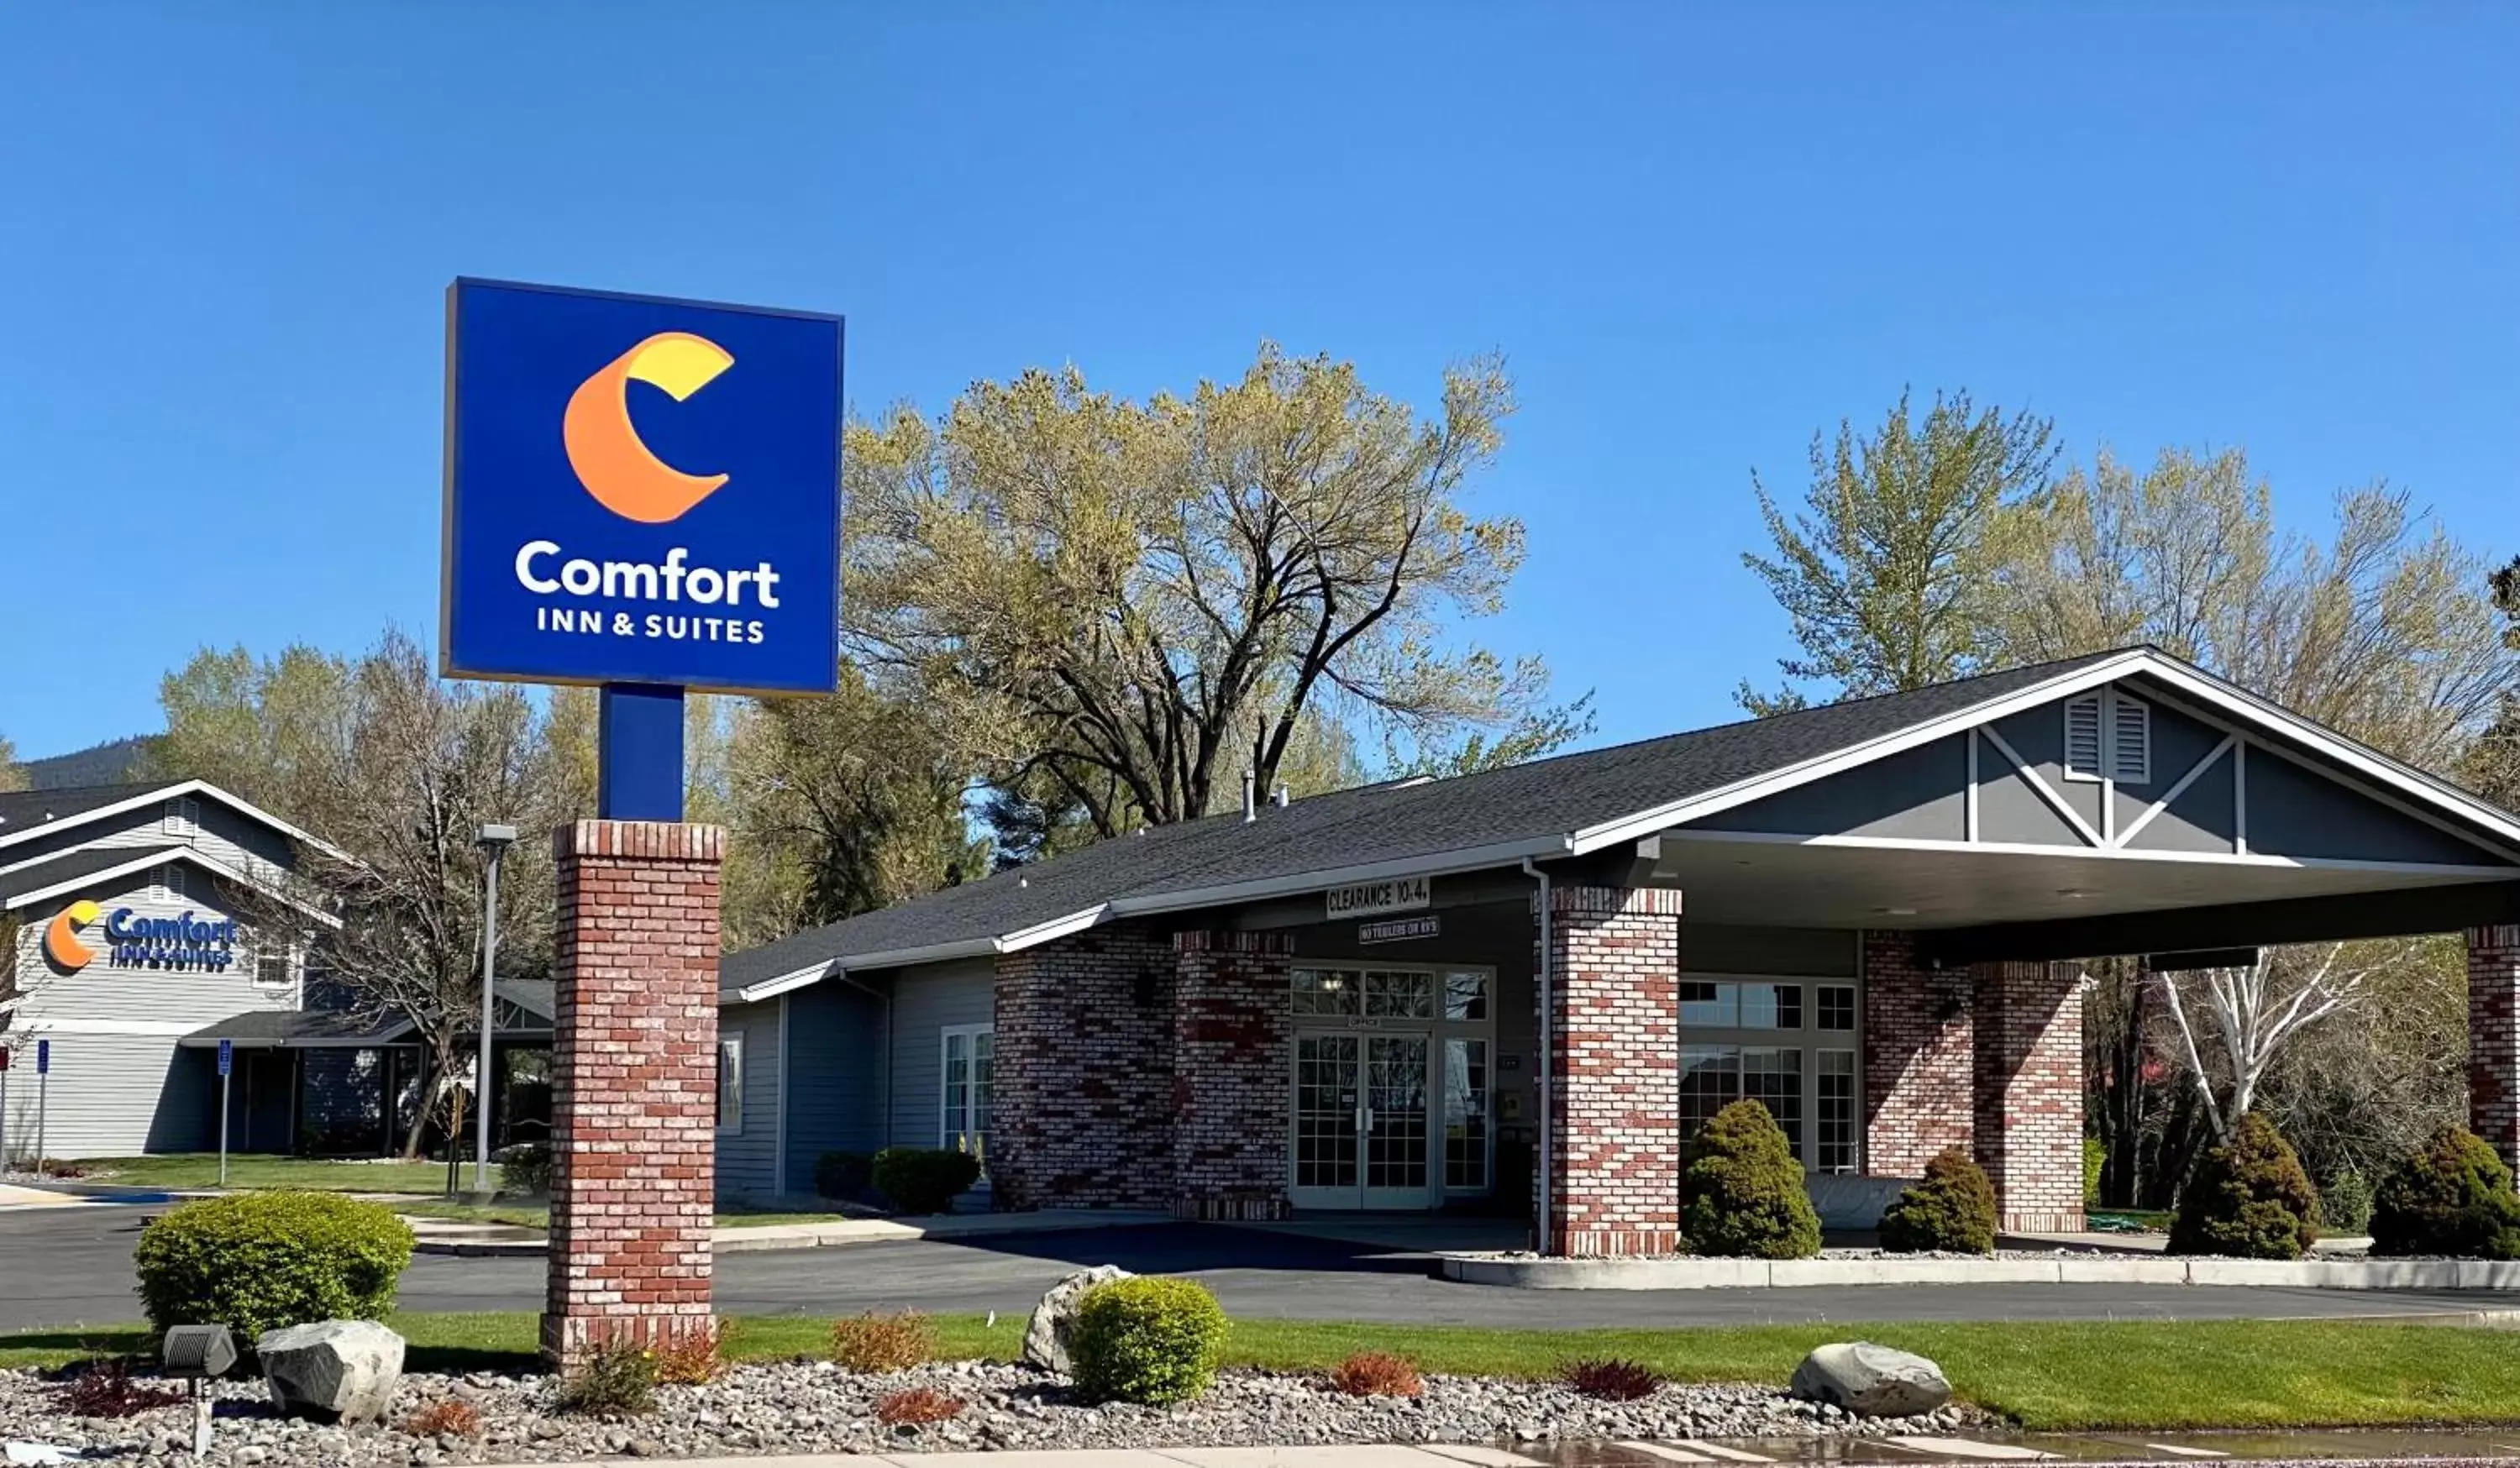 Property Building in Comfort Inn & Suites